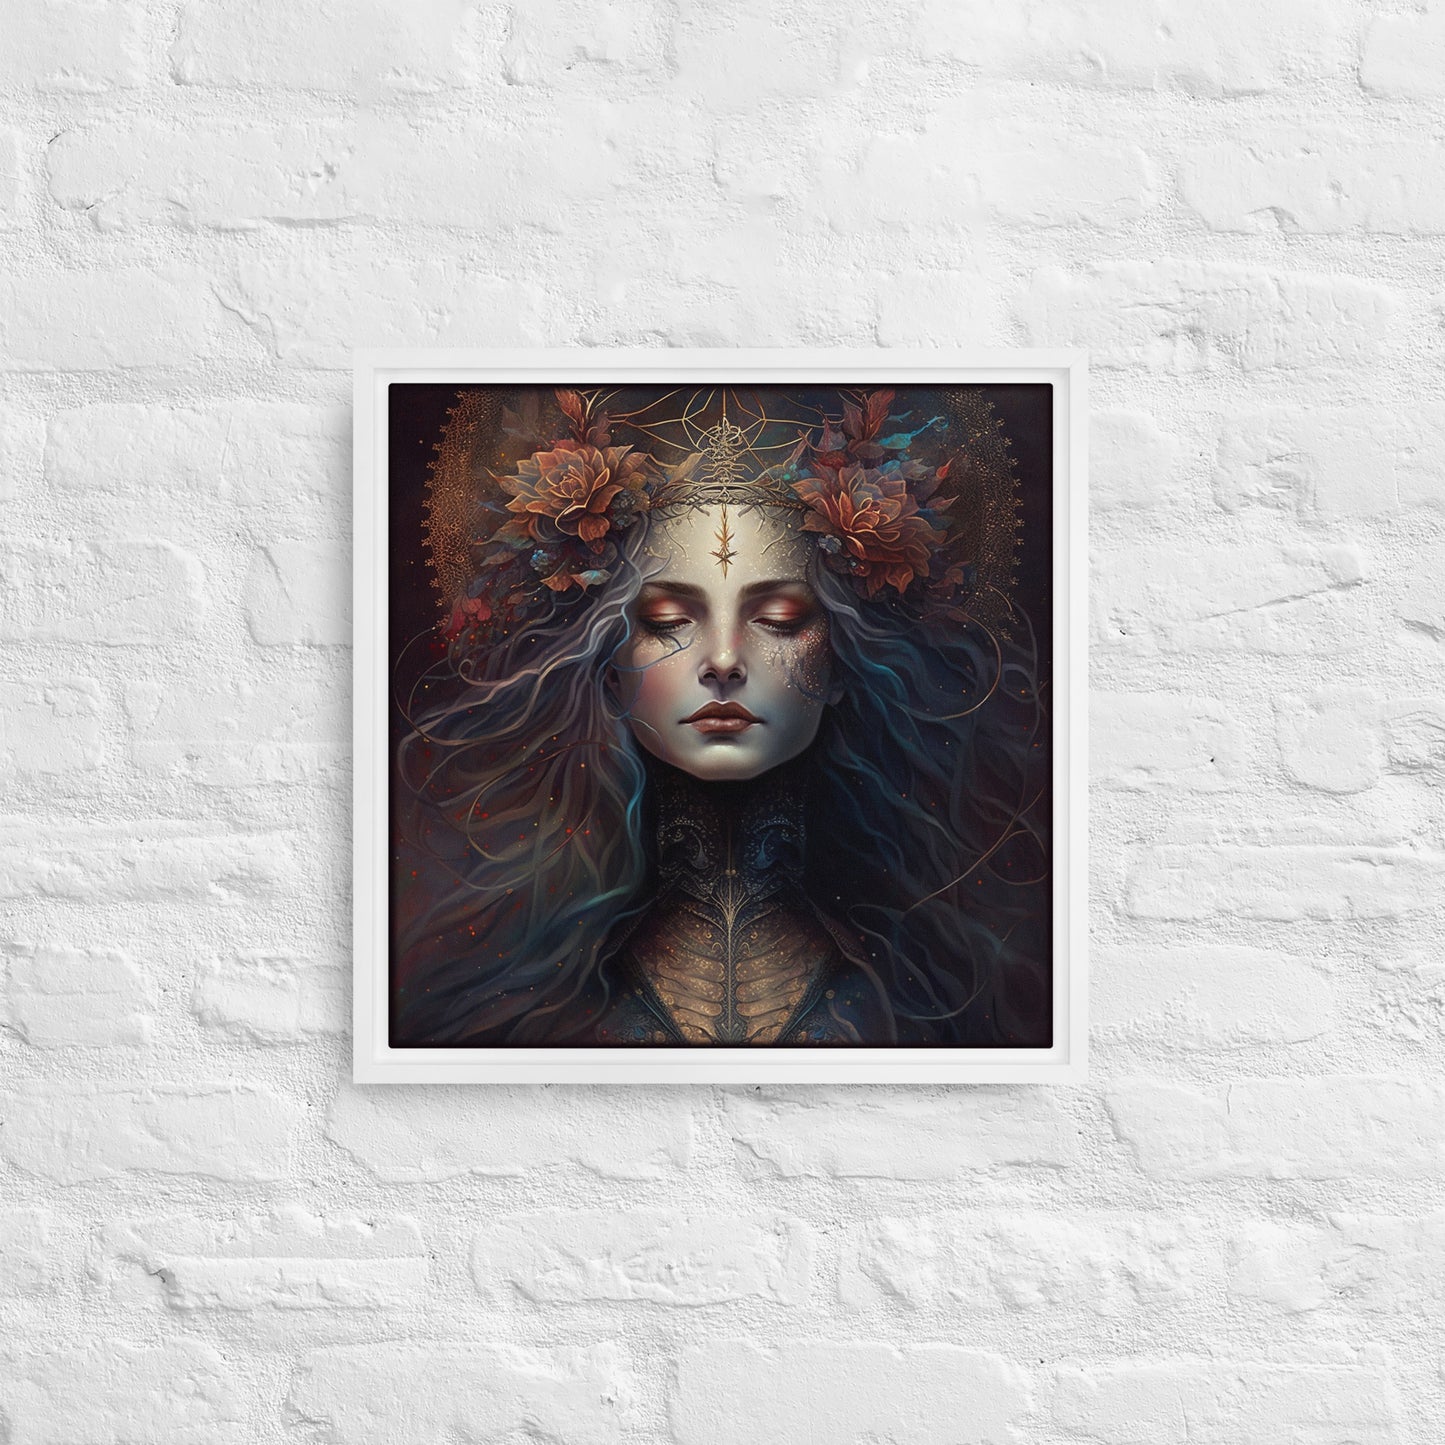 Warrior Goddess "Isolde" Framed canvas